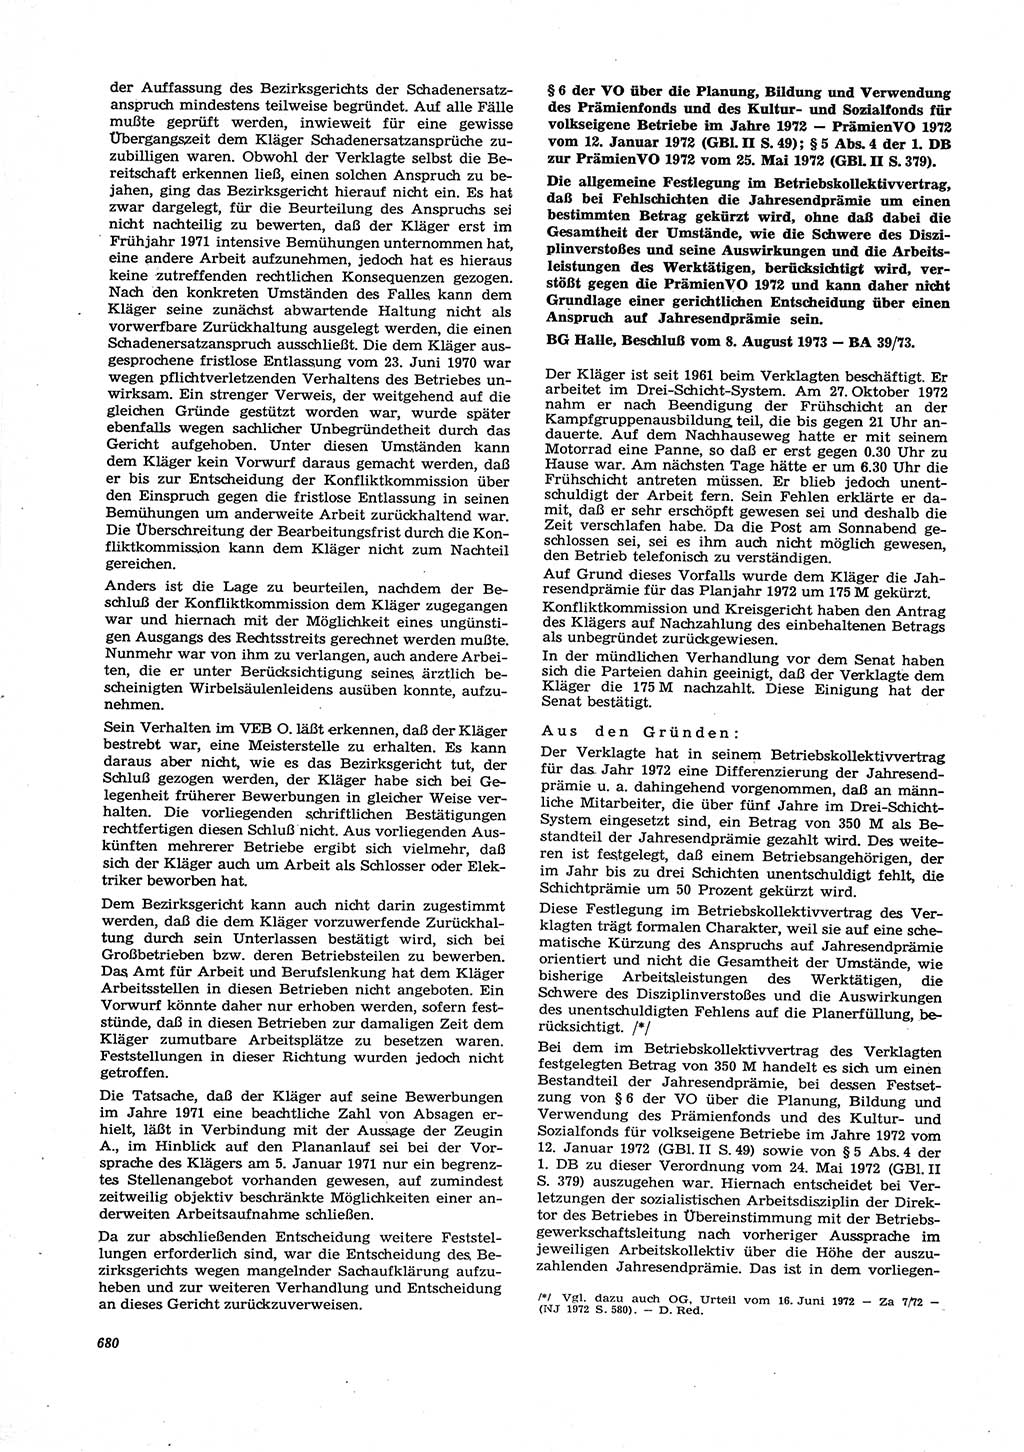 Neue Justiz (NJ), Zeitschrift für Recht und Rechtswissenschaft [Deutsche Demokratische Republik (DDR)], 27. Jahrgang 1973, Seite 680 (NJ DDR 1973, S. 680)